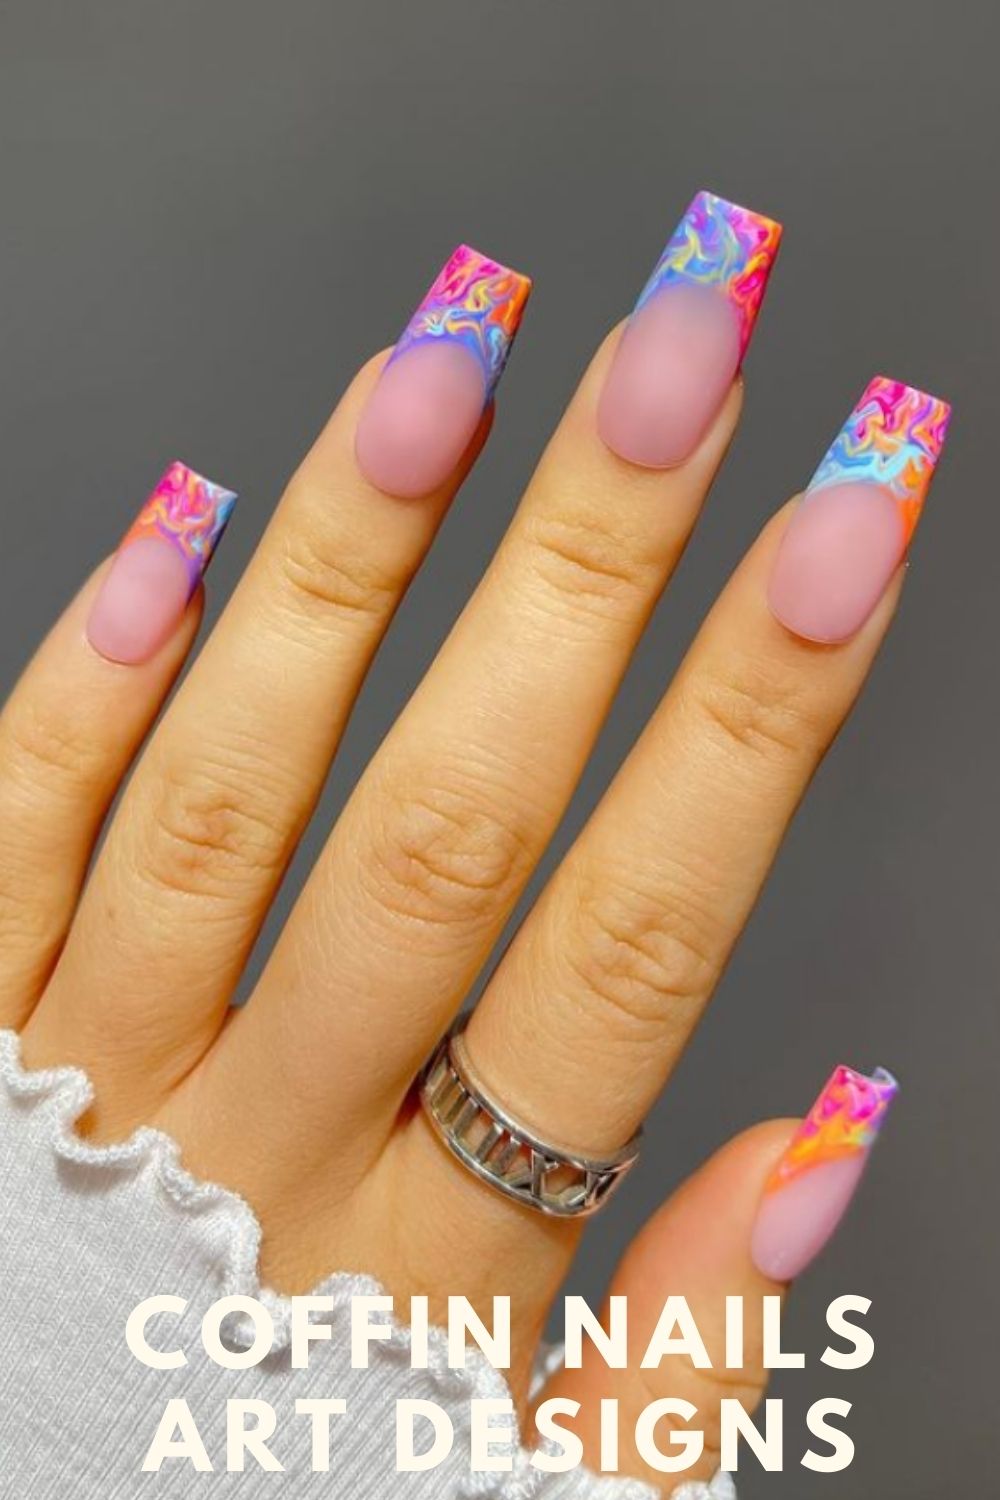 Nails art designs